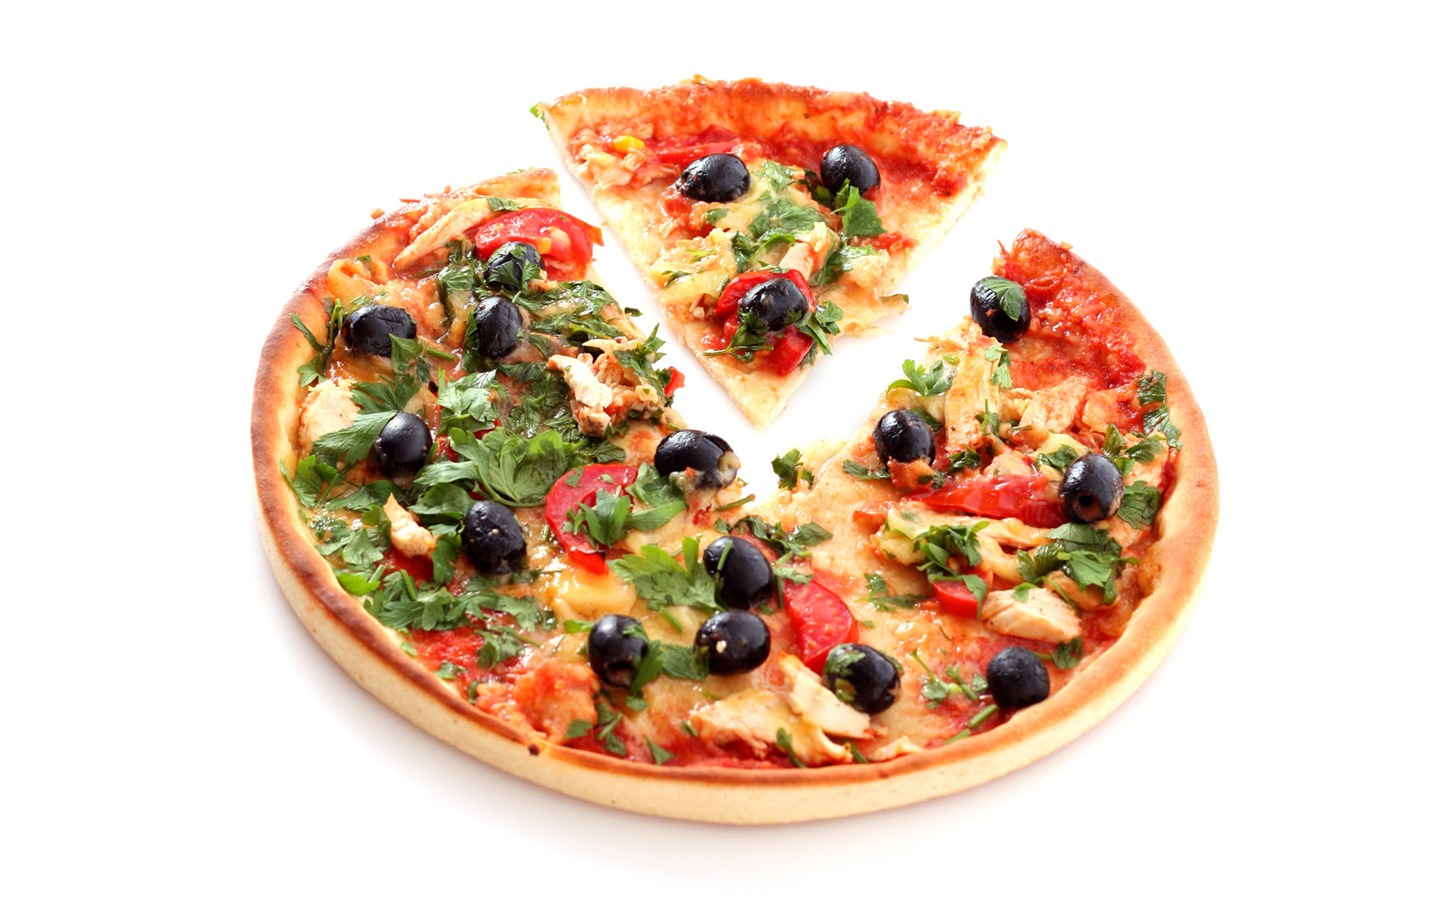 Fondos de pizzerías de Alimentos (4) #5 - 1440x900